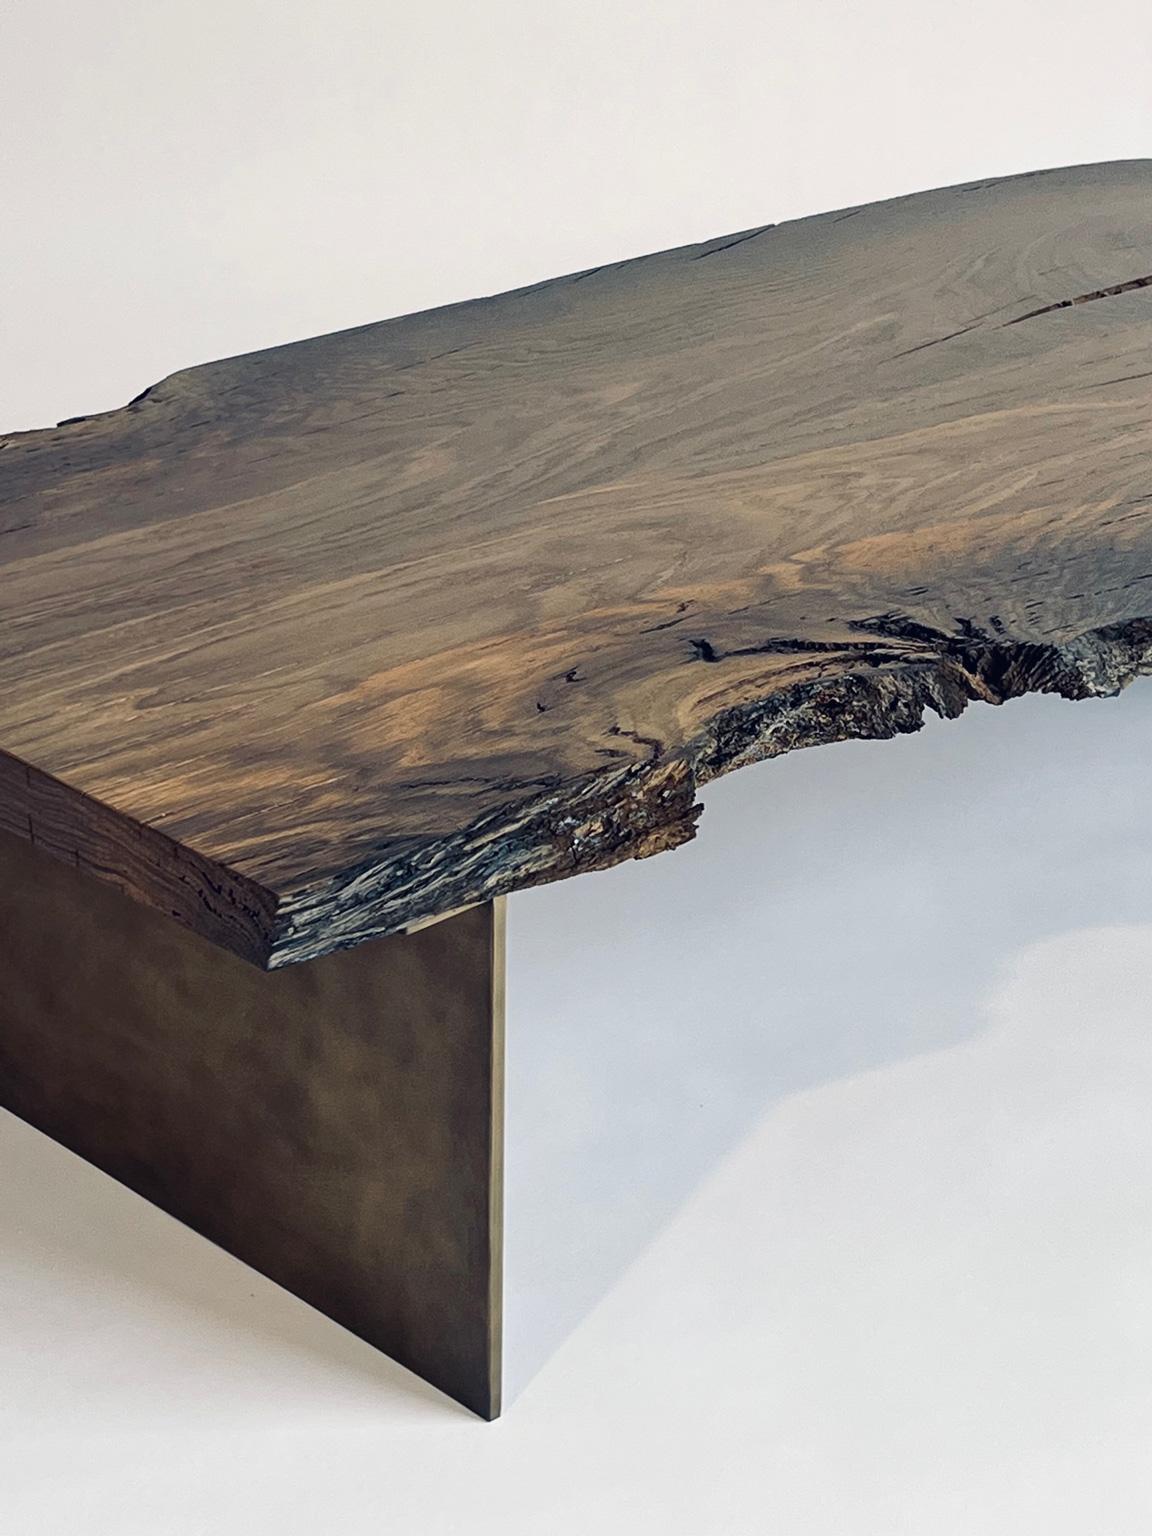 Il s'agit d'une table basse unique fabriquée en chêne des tourbières, vieux d'environ 7 000 ans. Le bois provient de Roumanie et est enfoui sous terre depuis environ 7 000 ans. Elle reste intacte car elle est isolée de l'oxygène, ce qui empêche la